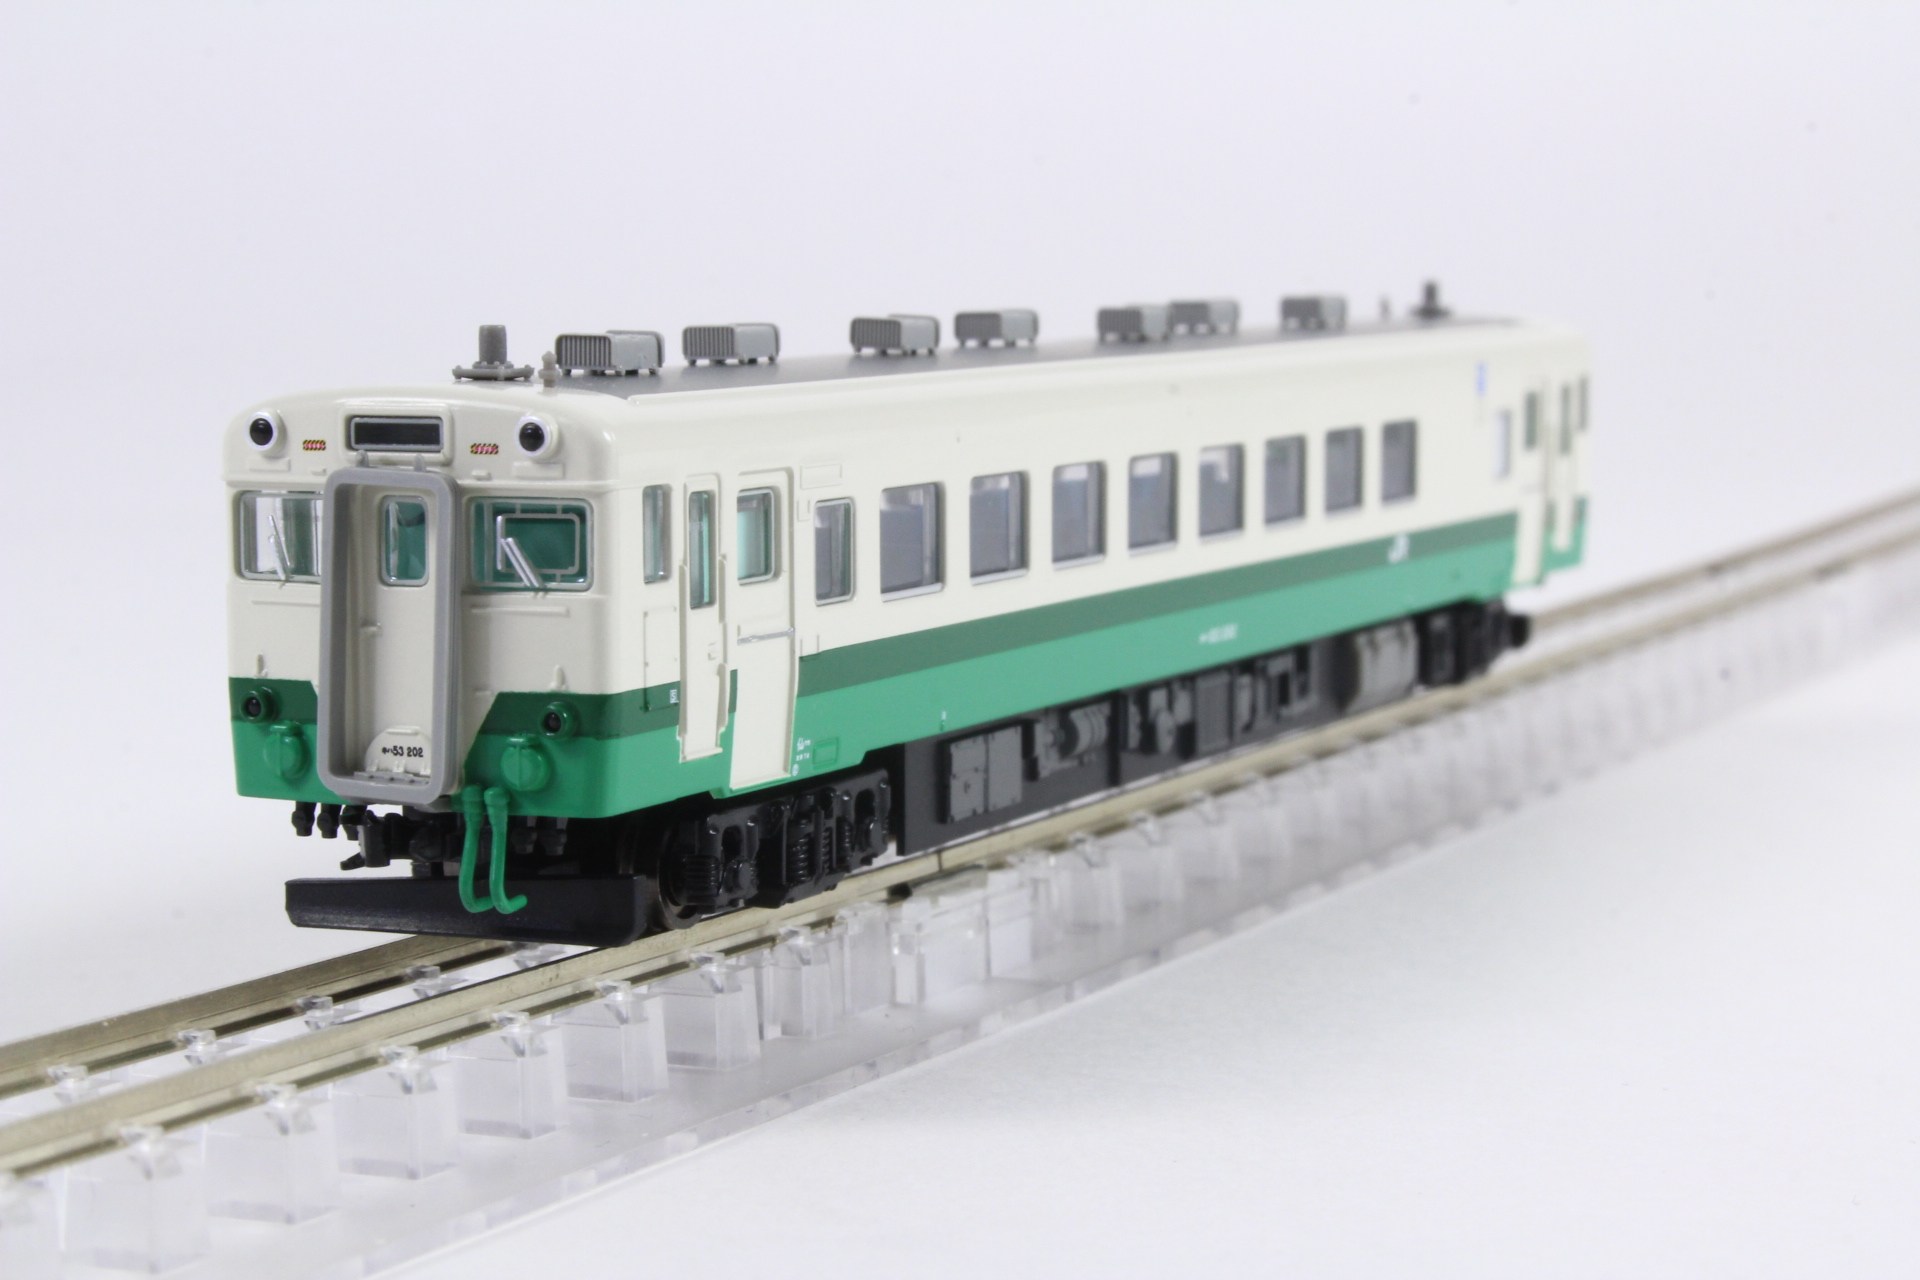 マイクロエース A6181 キハ53-202 東北色 鉄道模型 Nゲージ タムタムオンラインショップ札幌店 通販 鉄道模型